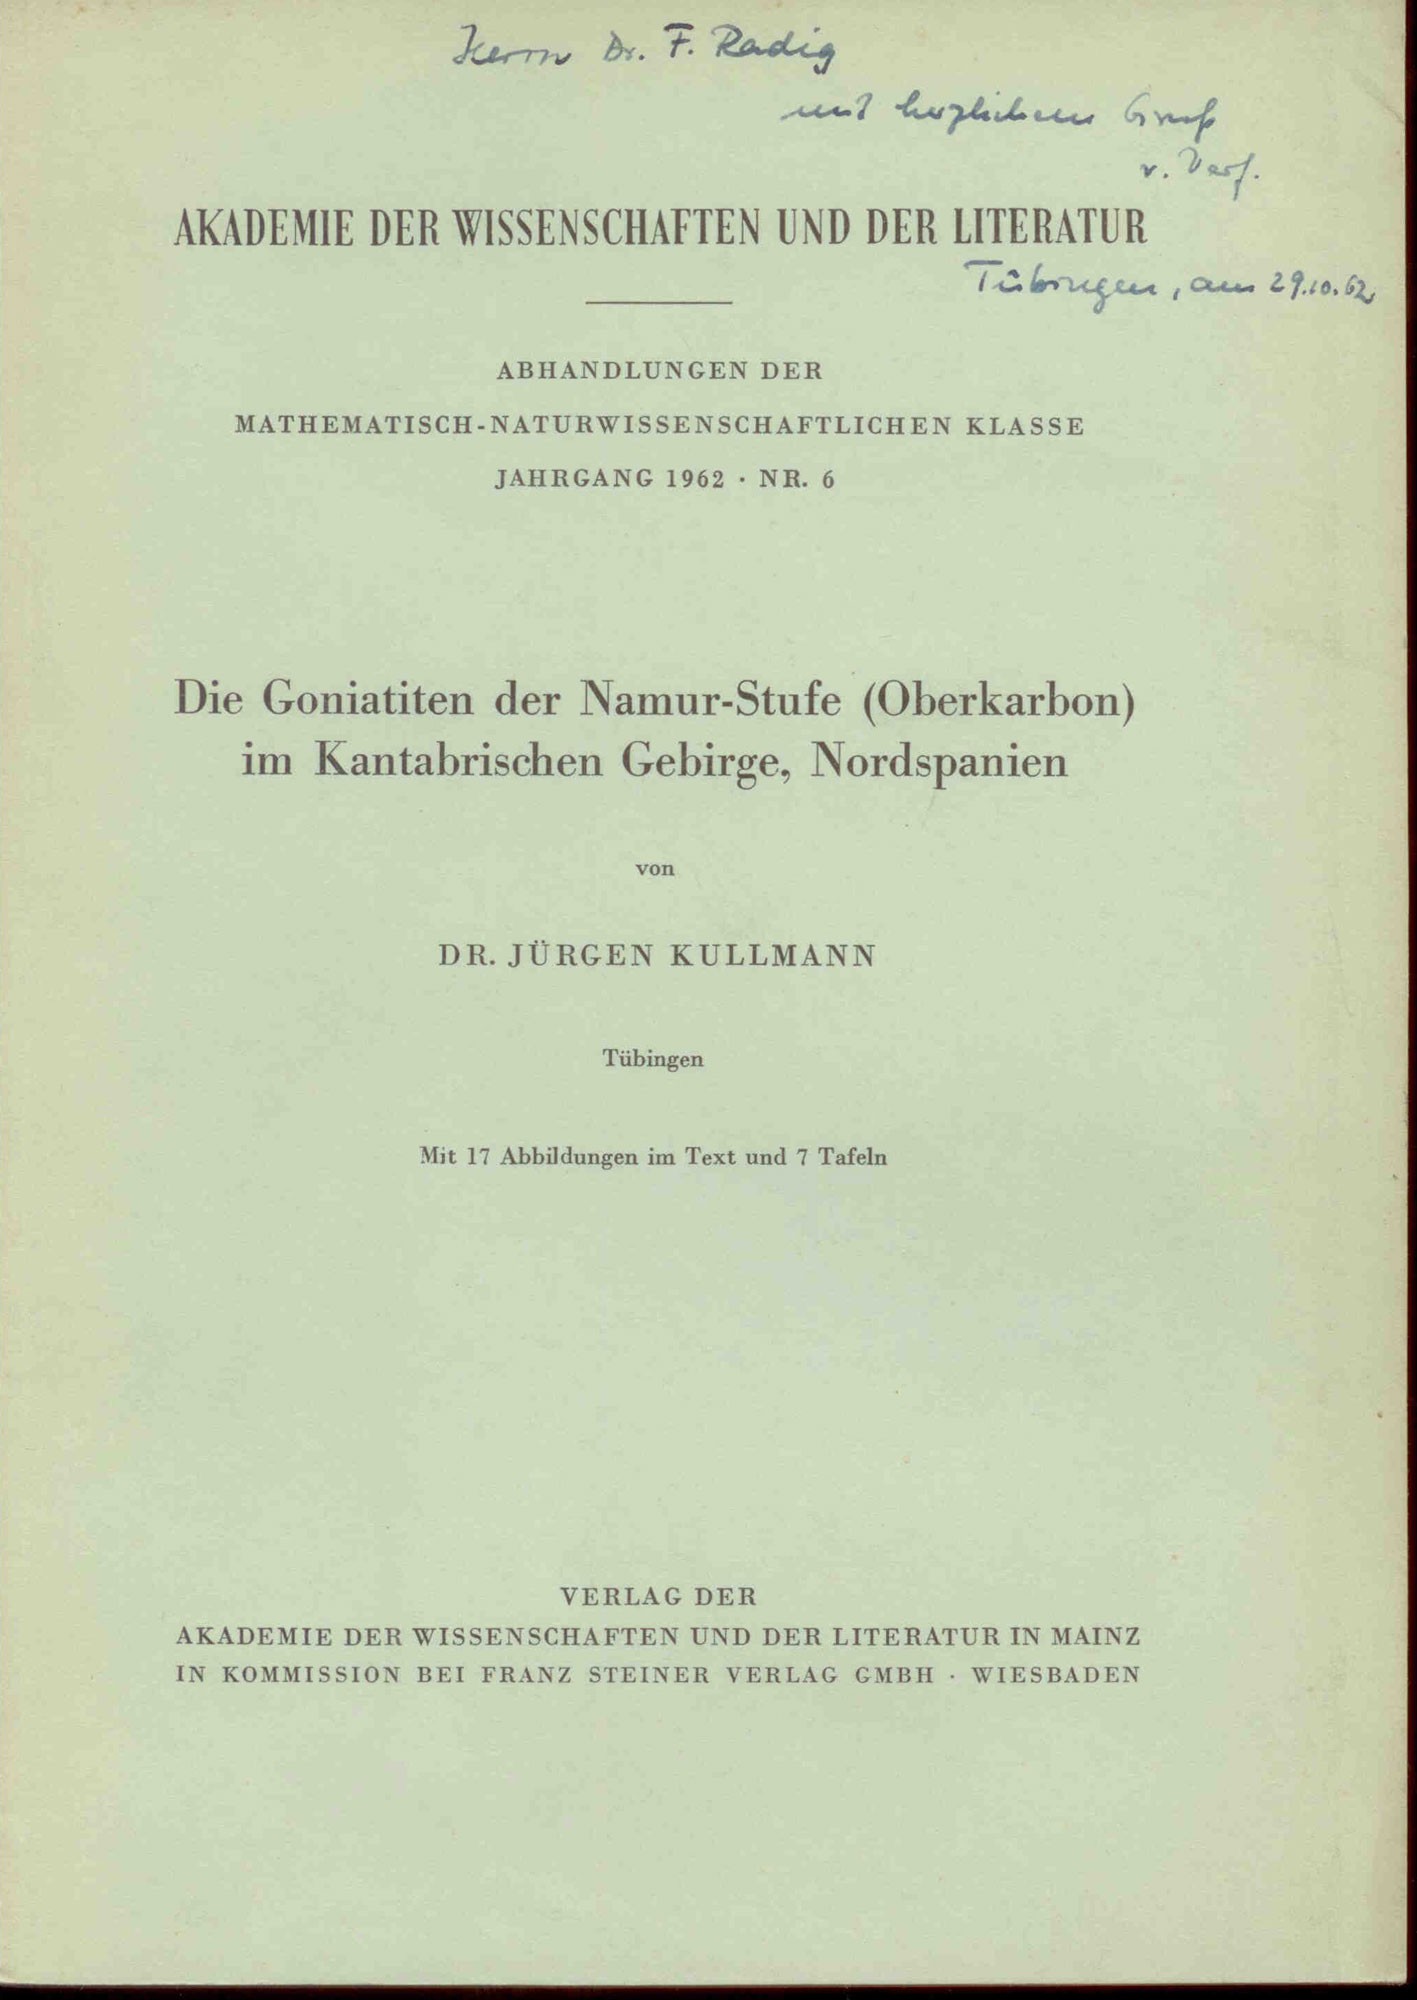 Kullmann, J.: Die Goniatiten der Namur-Stufe (Oberkarbon) im Kantabrischen Gebirge, Nordspanien.